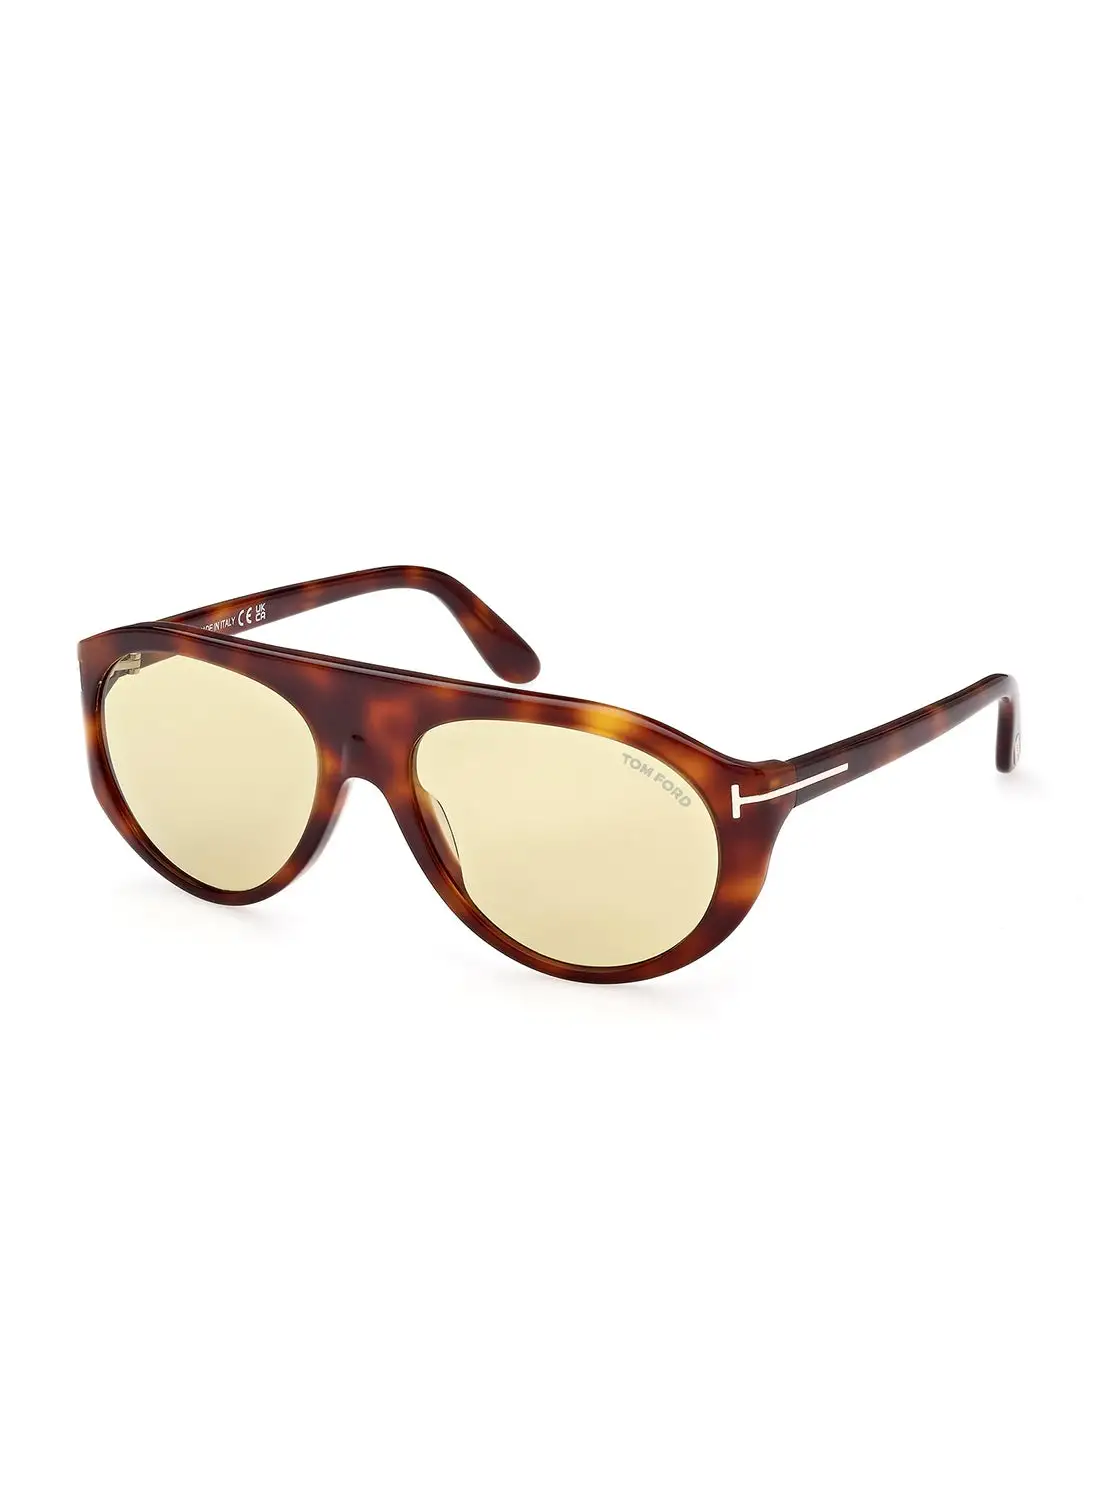 TOM FORD Men's Photochromic Pilot Sunglasses - FT100153E57 - Lens Size: 57 Mm